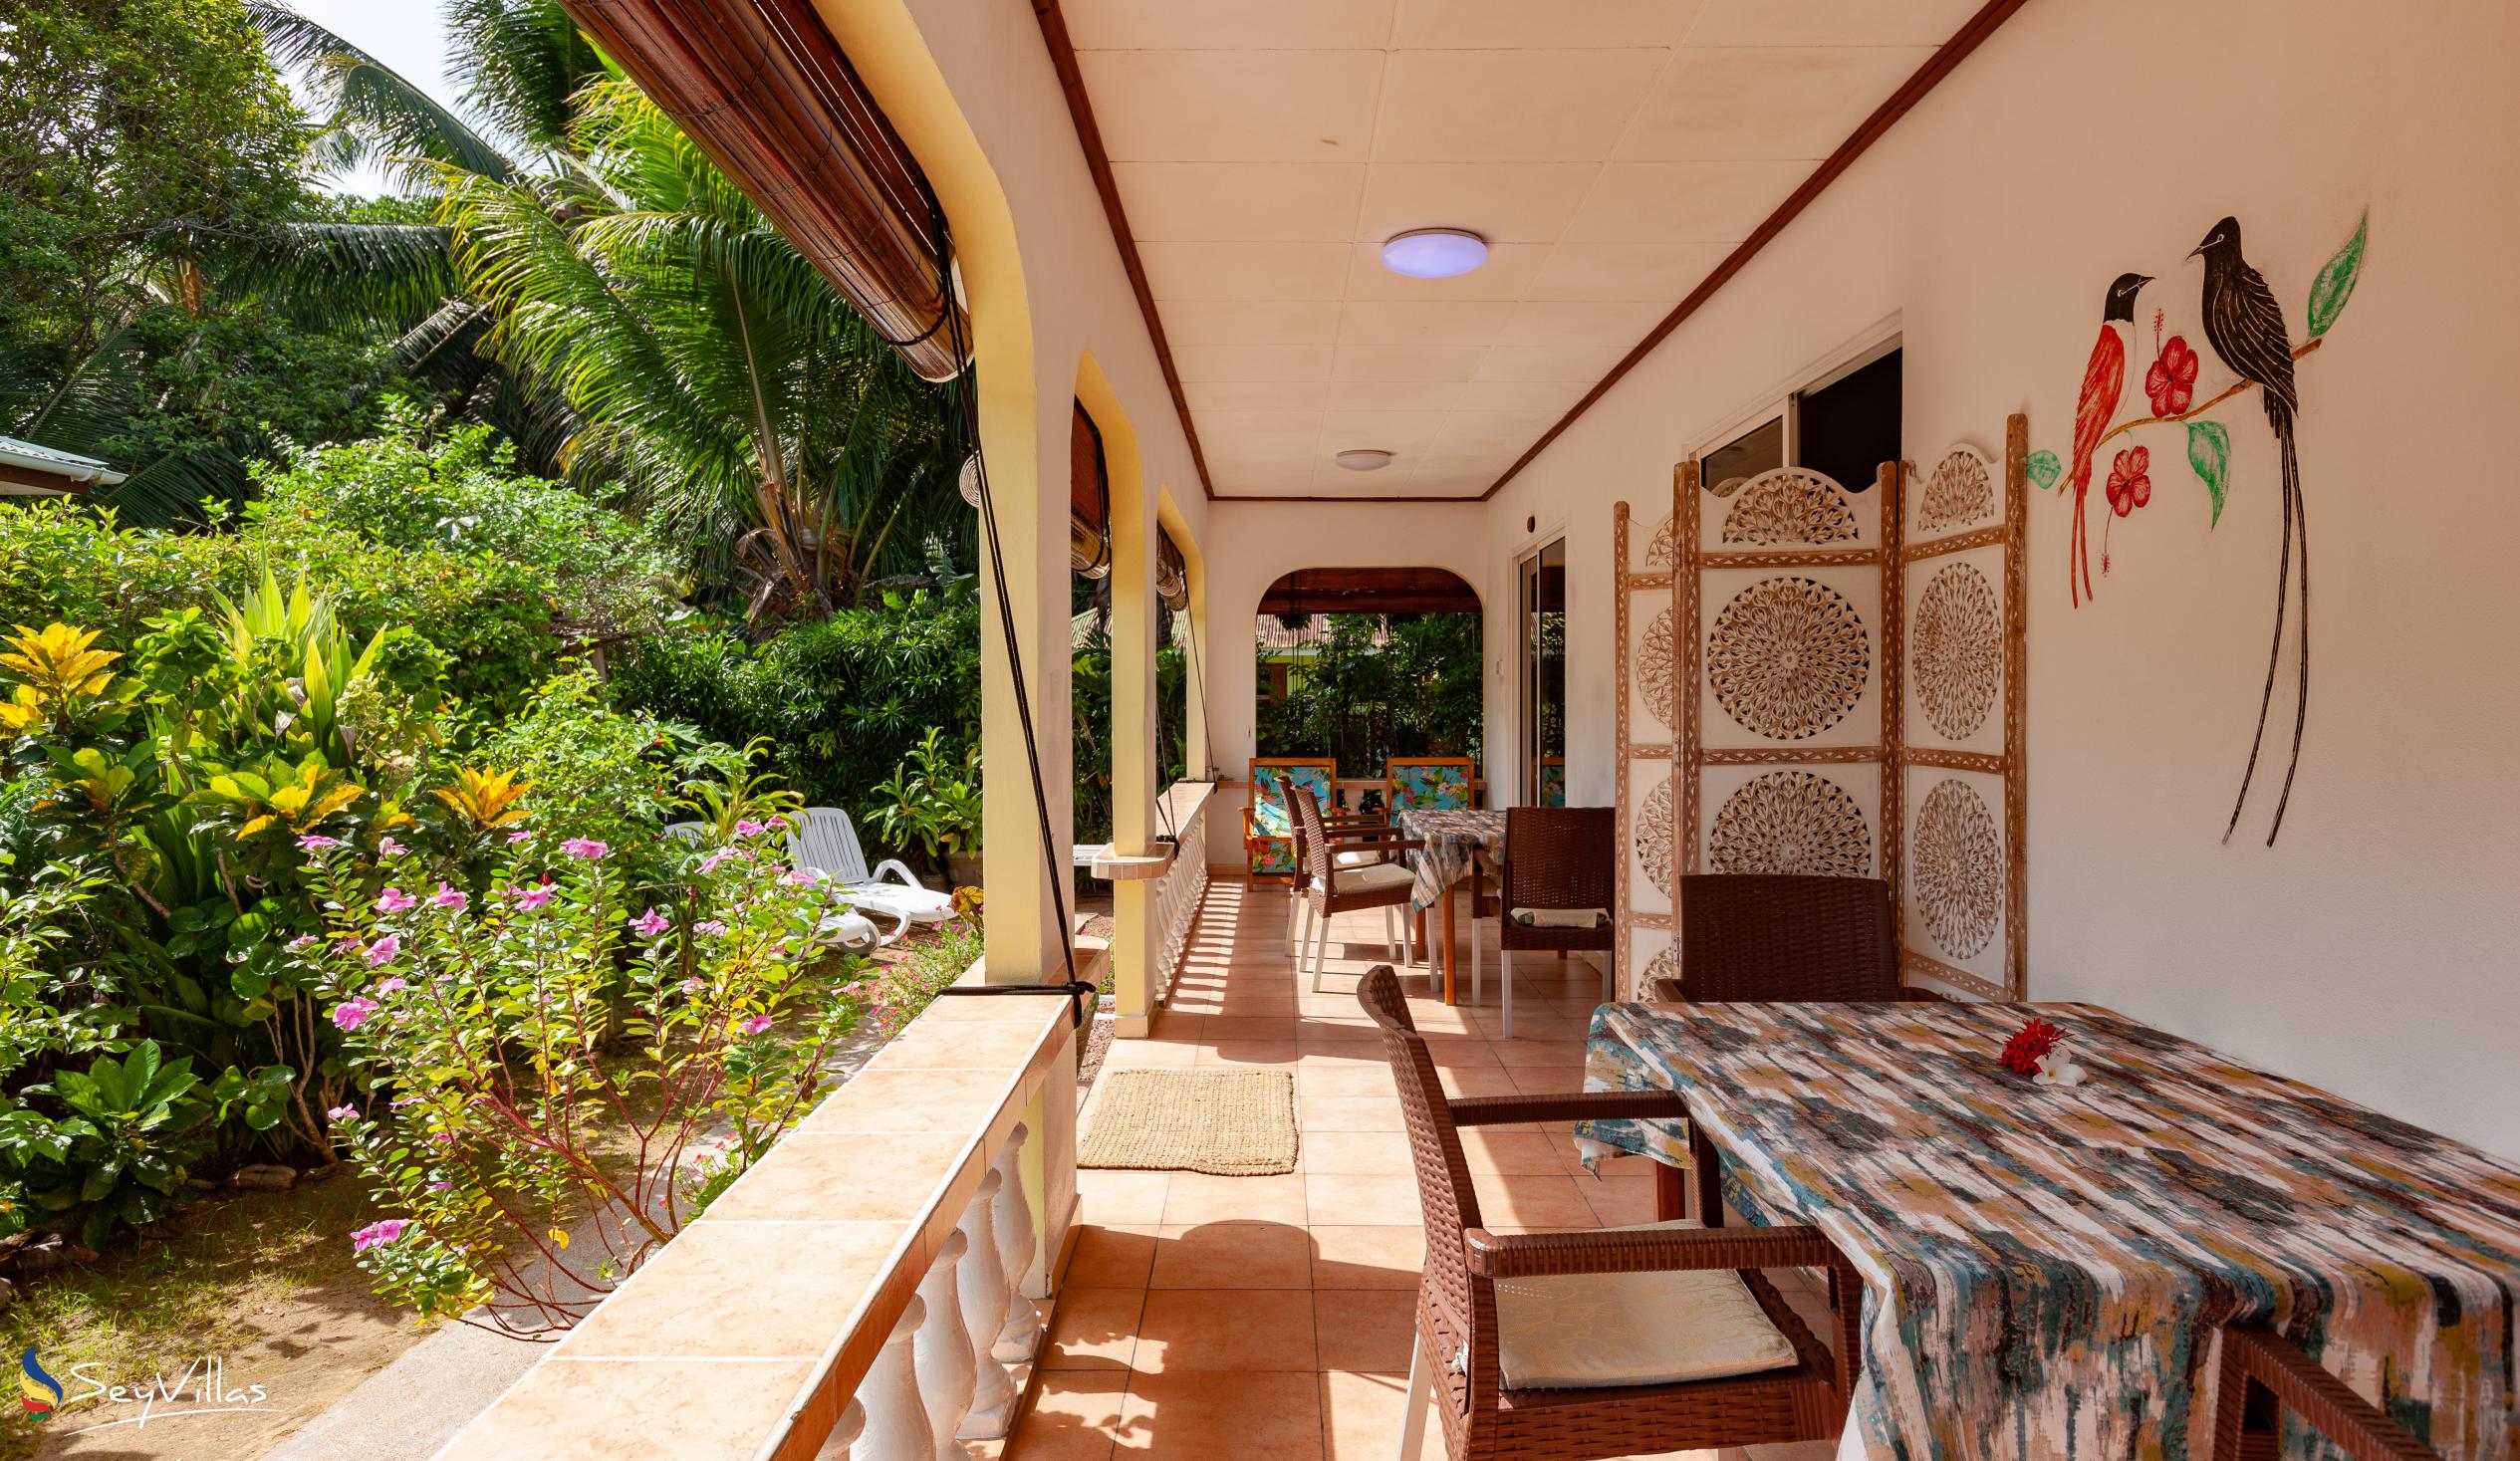 Photo 35: Pension Hibiscus - Maison Alice - Standard Apartment - La Digue (Seychelles)